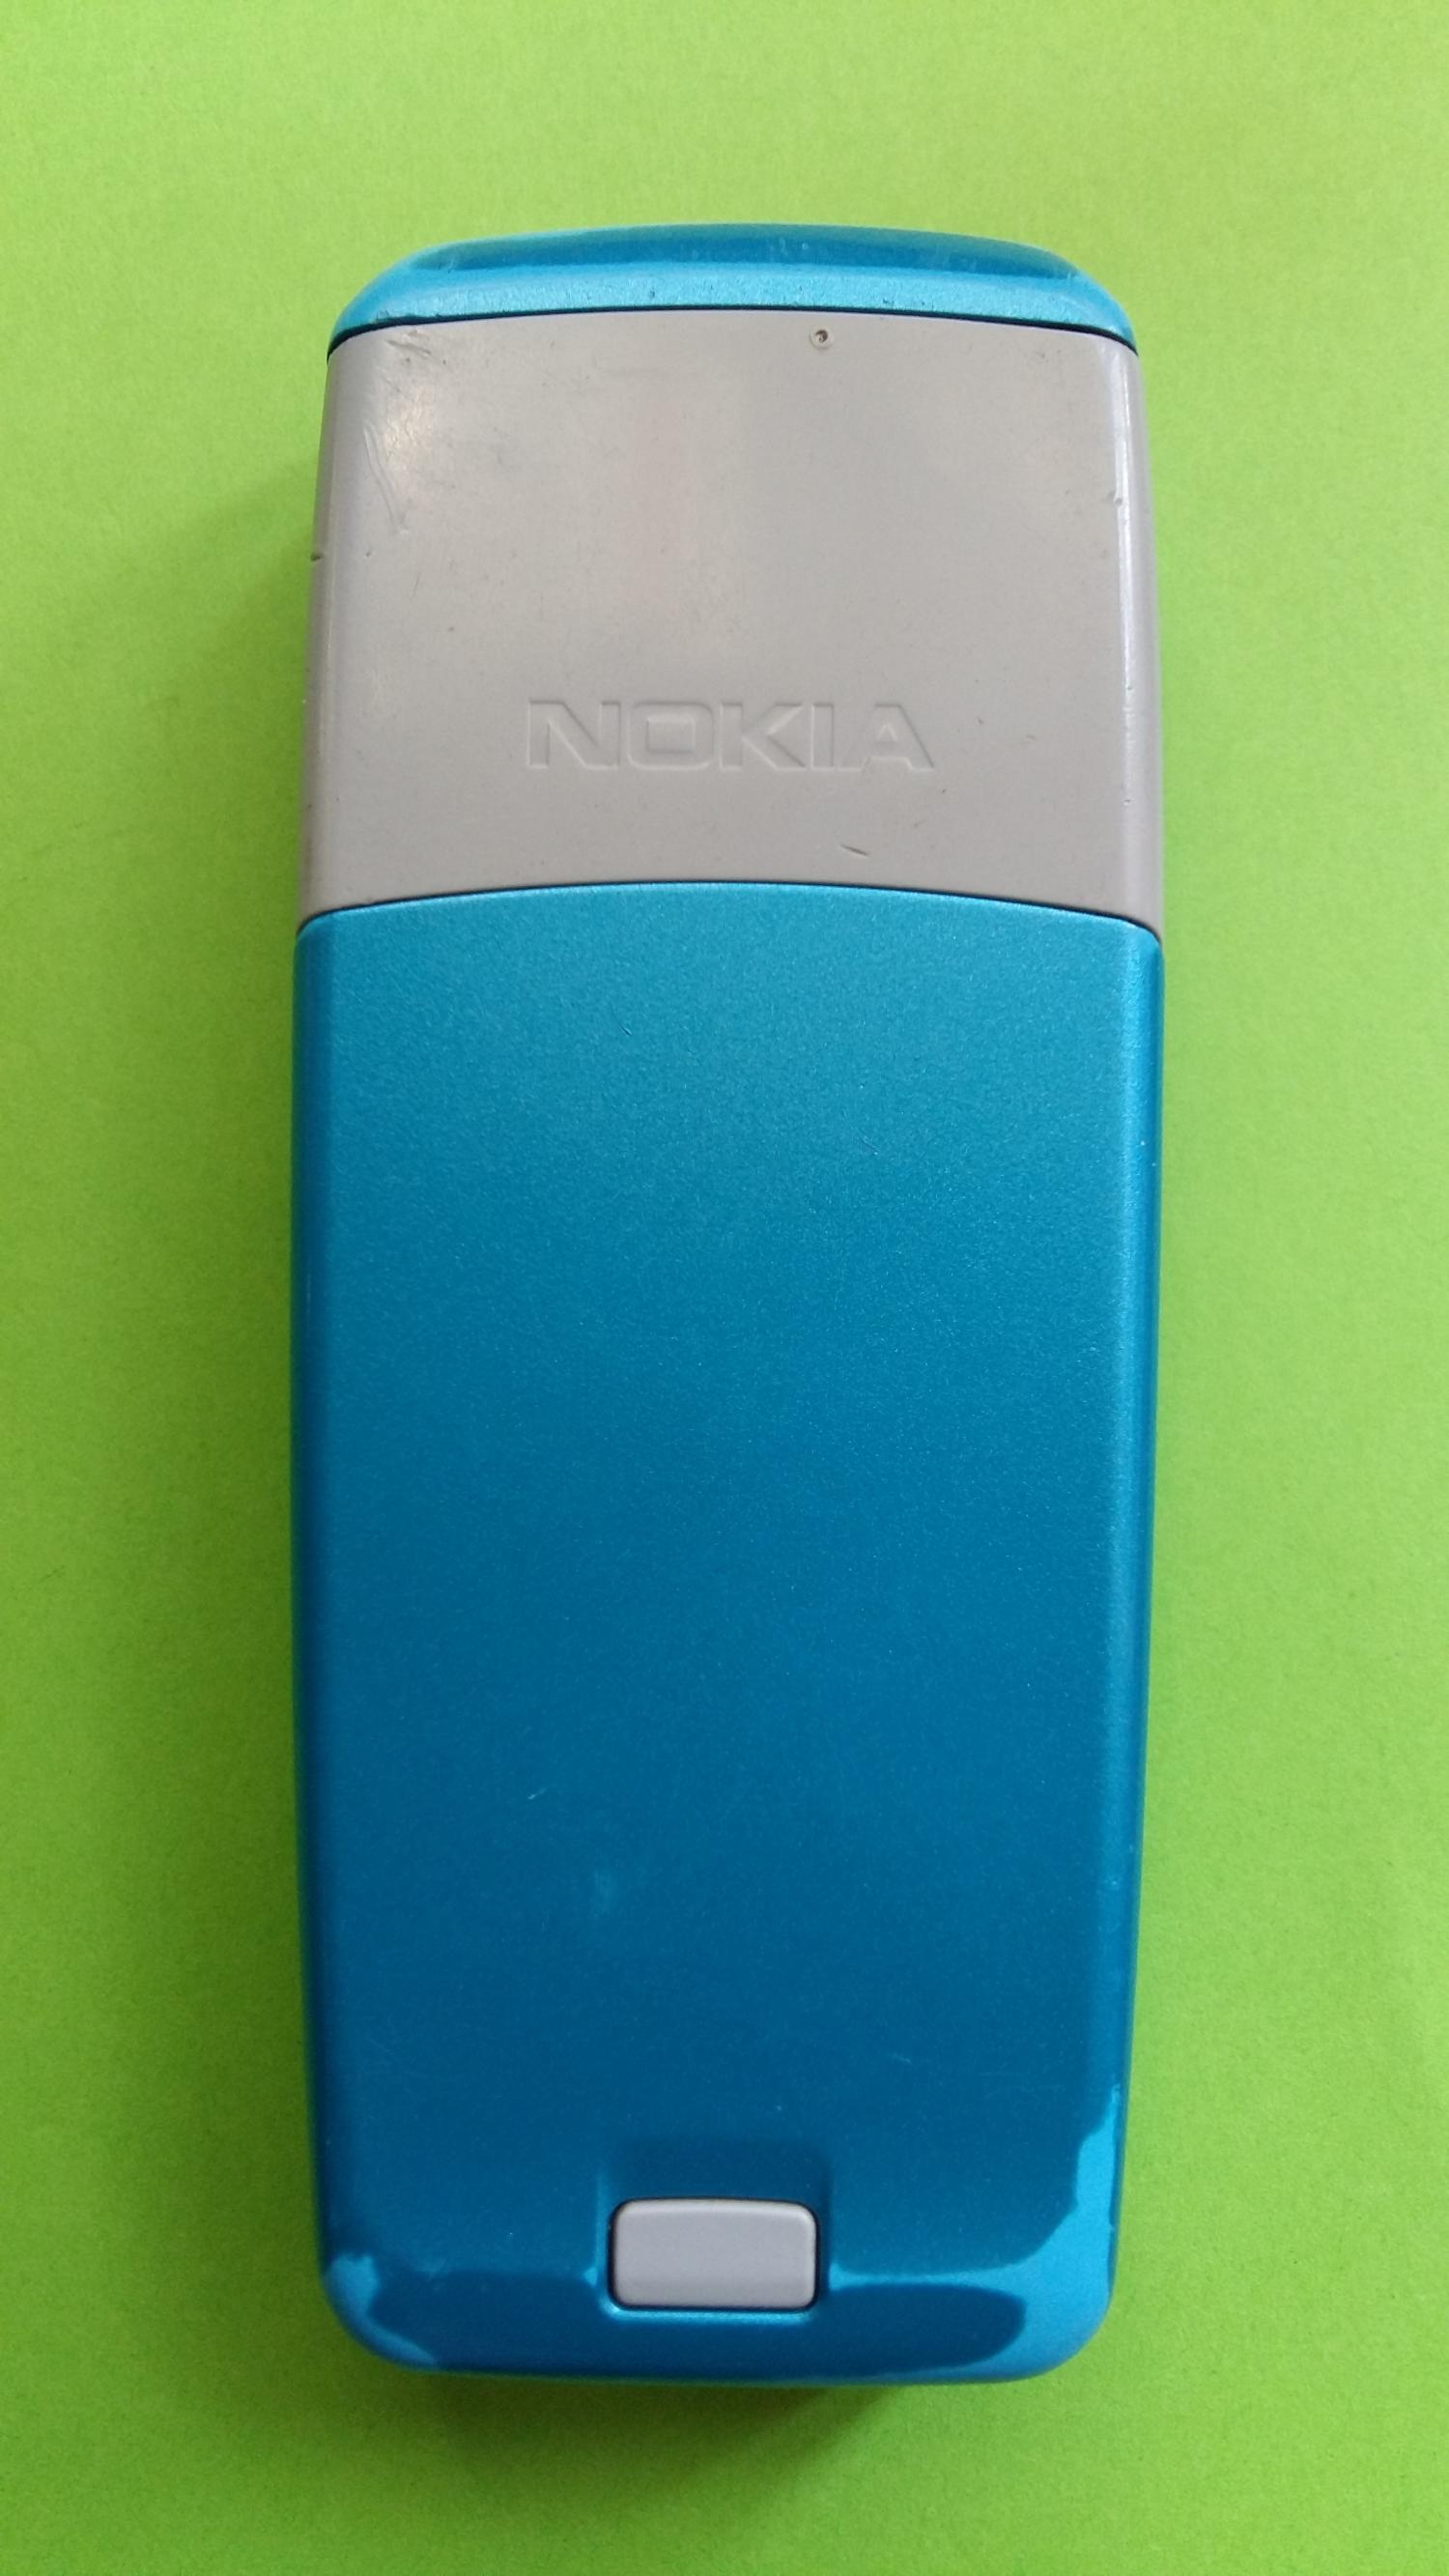 image-7313455-Nokia 2310 (2)2.jpg